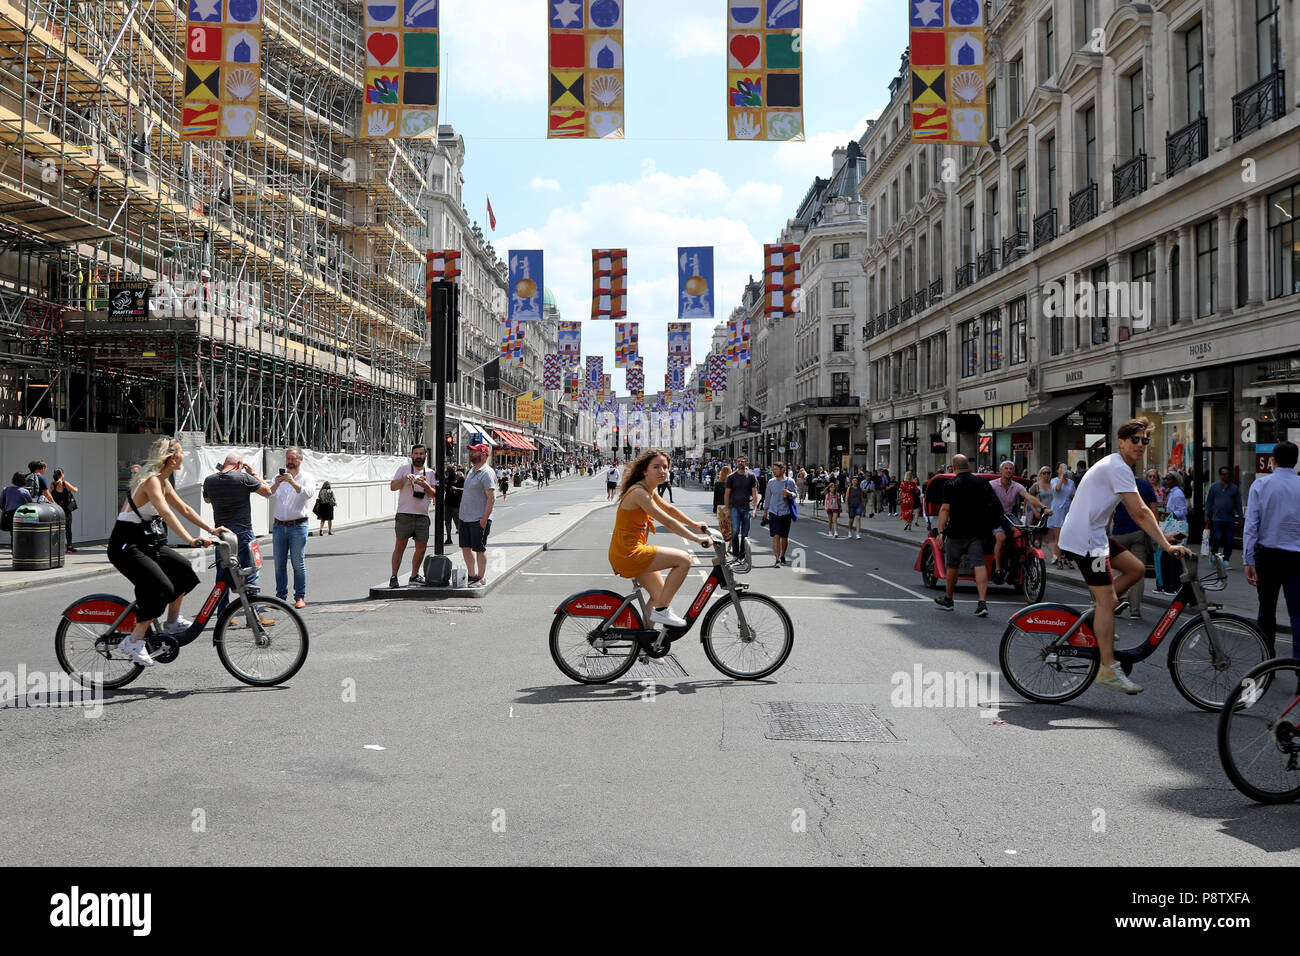 Londres, Royaume-Uni - 13 juillet 2018 : Les cyclistes traversent un car-free Regent Street au centre de Londres, avant d'une marche pour protester contre le président américain, Donald Trump Crédit : Dominic Dudley/Alamy Live News Banque D'Images